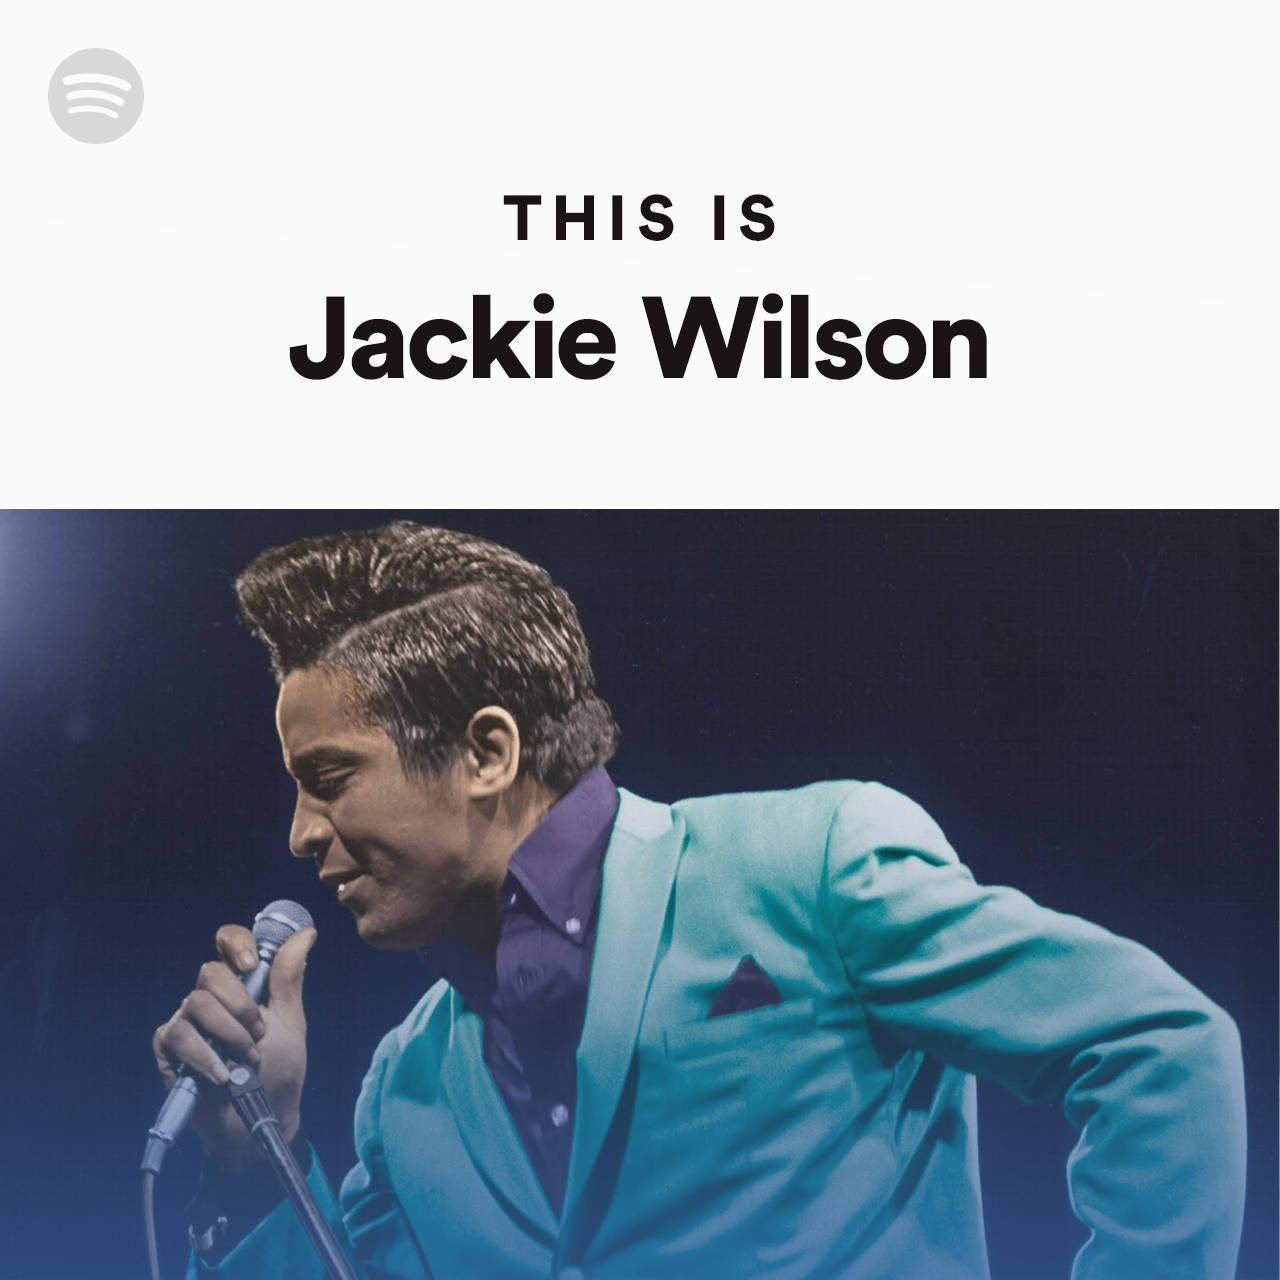 Jackiewilson Amerikansk Sångare Spotify Spellista Omslag. Wallpaper